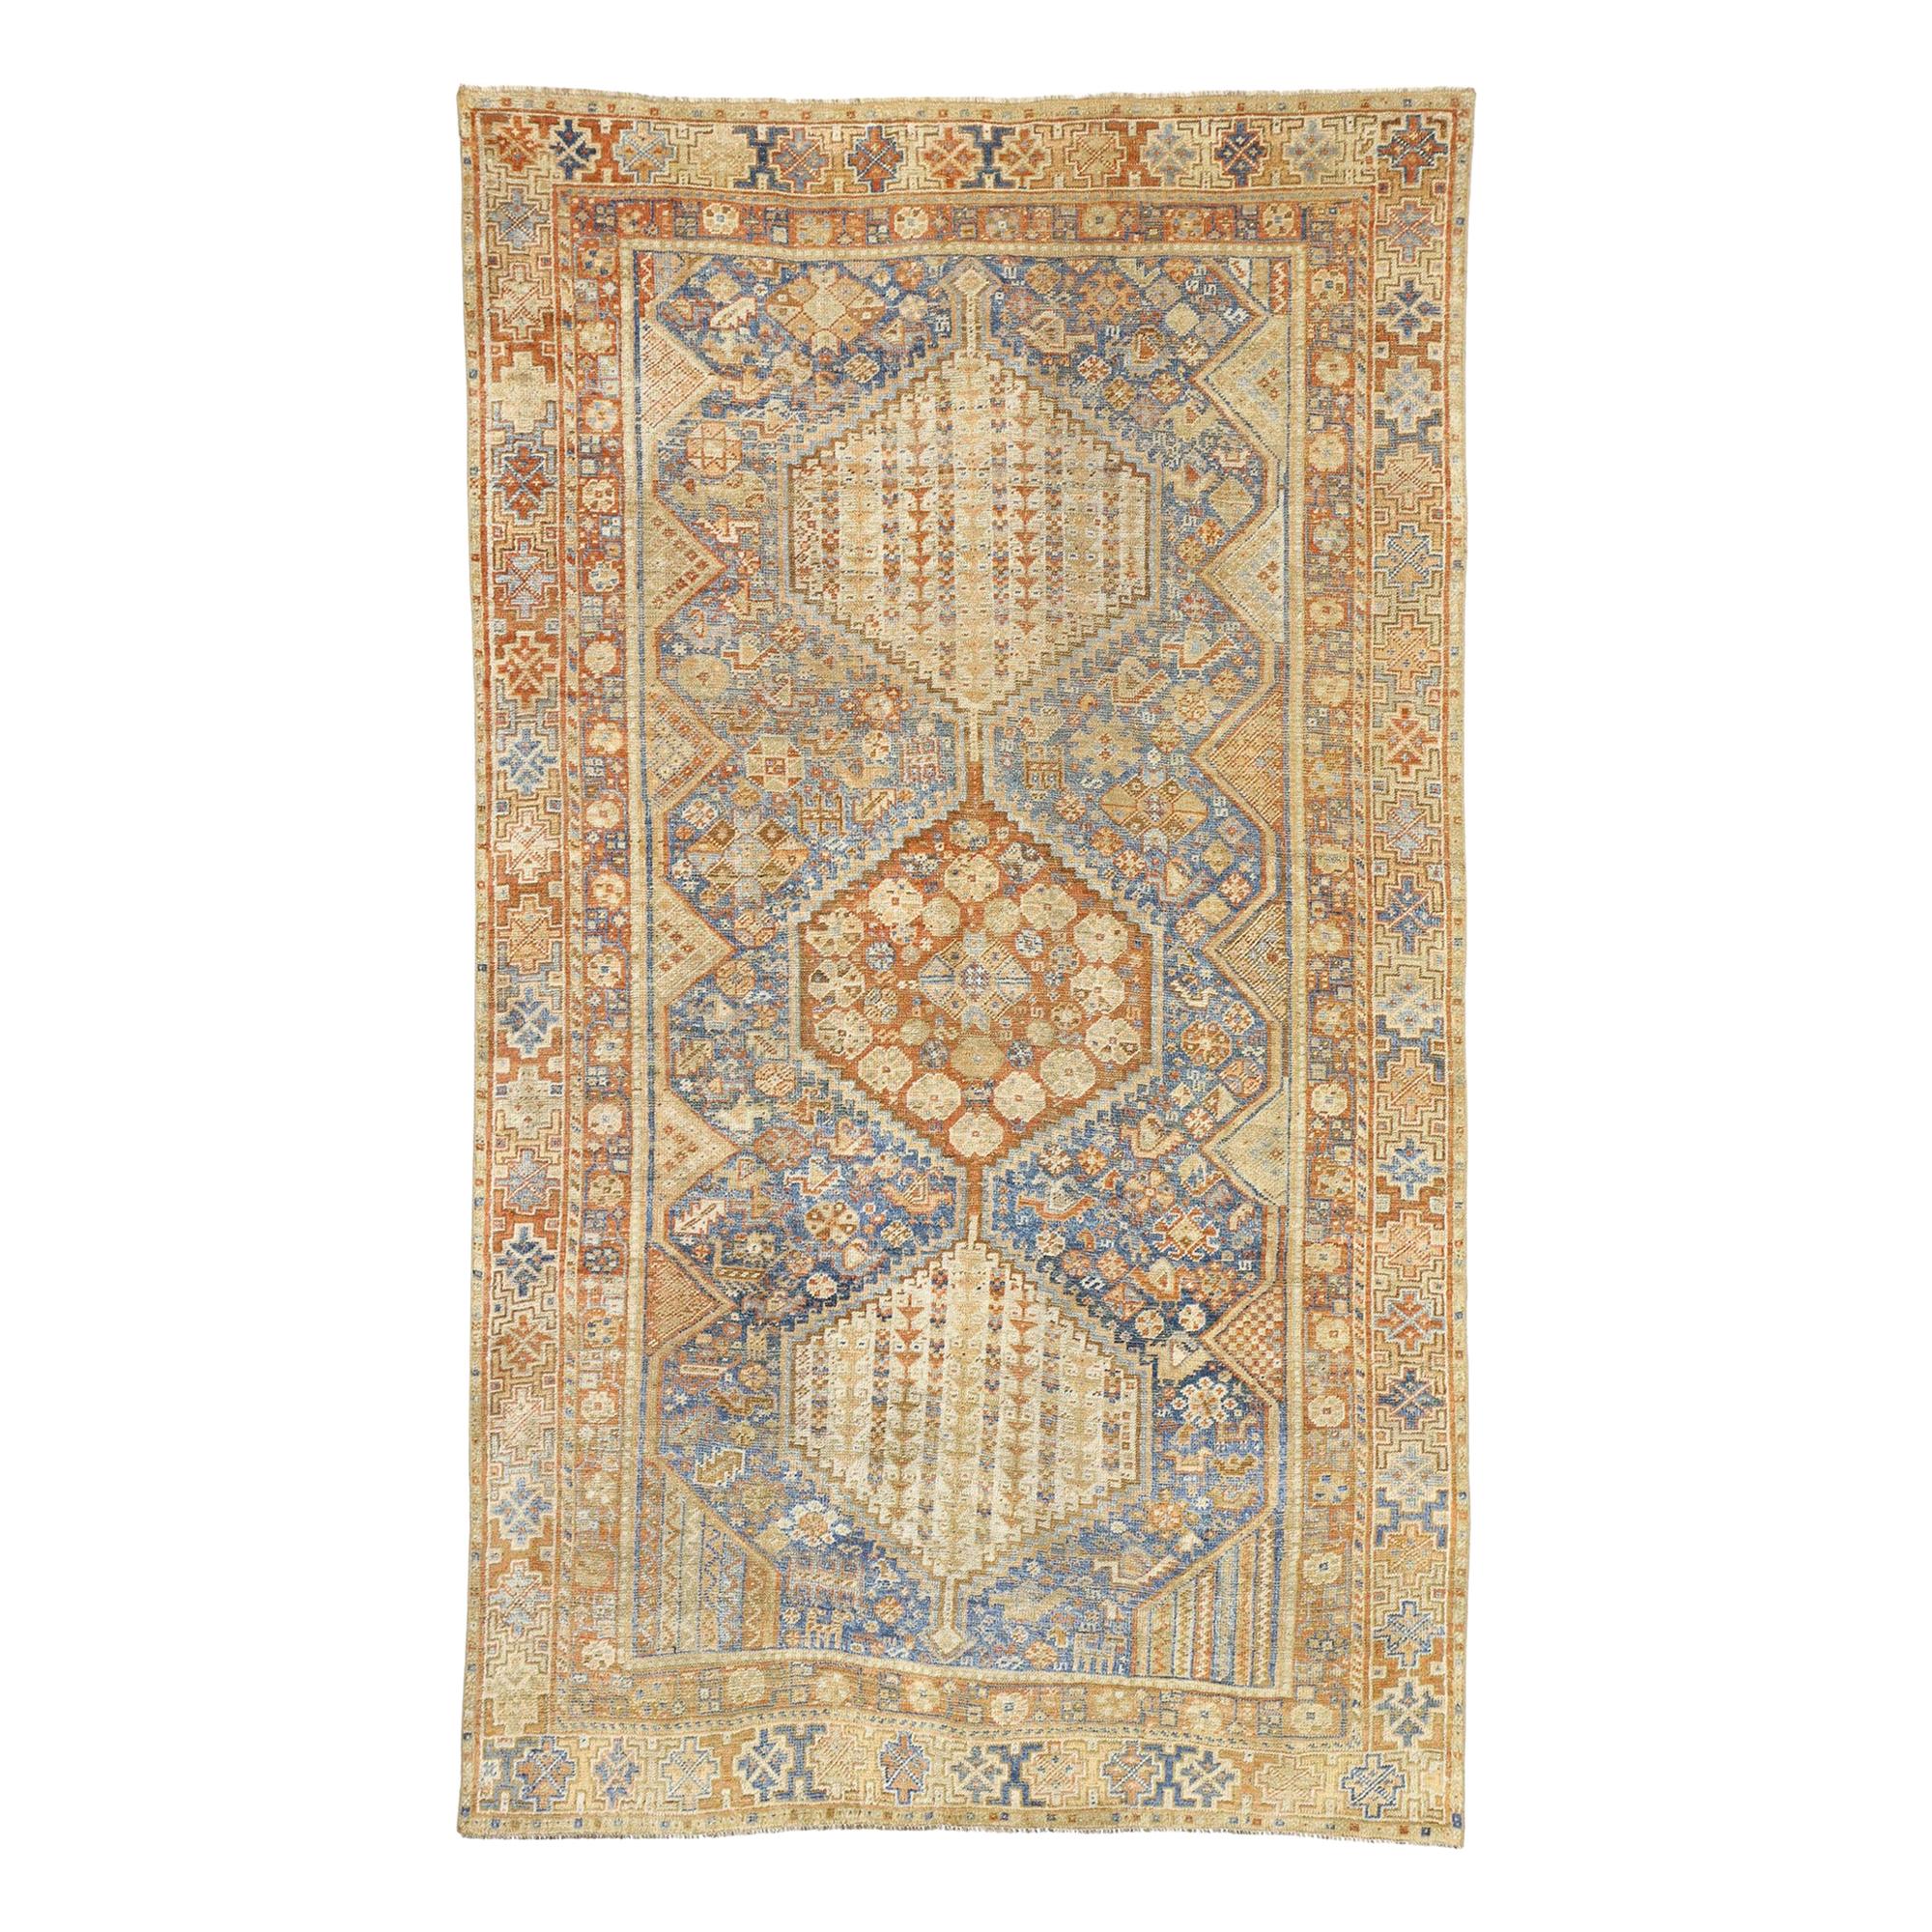 Distressed Antique Persian Shiraz Design Teppich mit italienischen Landhaus Rustic Style